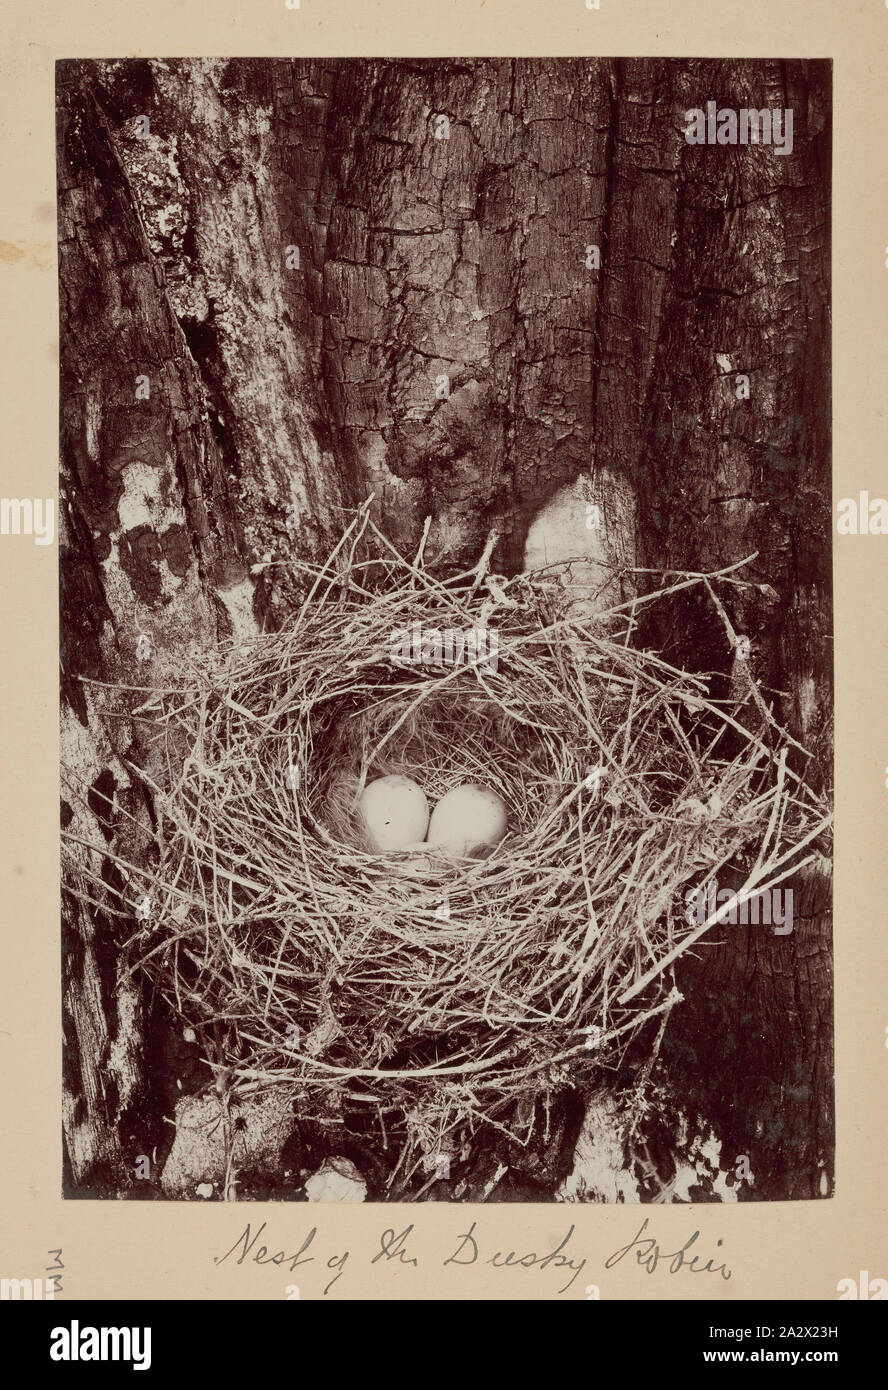 Photographie - nids de Dusky Robin (Melanodryas vittata), Furneaux Group, le détroit de Bass, 1893, l'un des soixante-neuf noir et blanc et photographies sépia dans un album relié [6] sont mal prises par un J Campbell lors d'un Field Naturalists' Club of Victoria de savants dans le groupe d'îles Furneaux, le détroit de Bass, en novembre1893 Banque D'Images